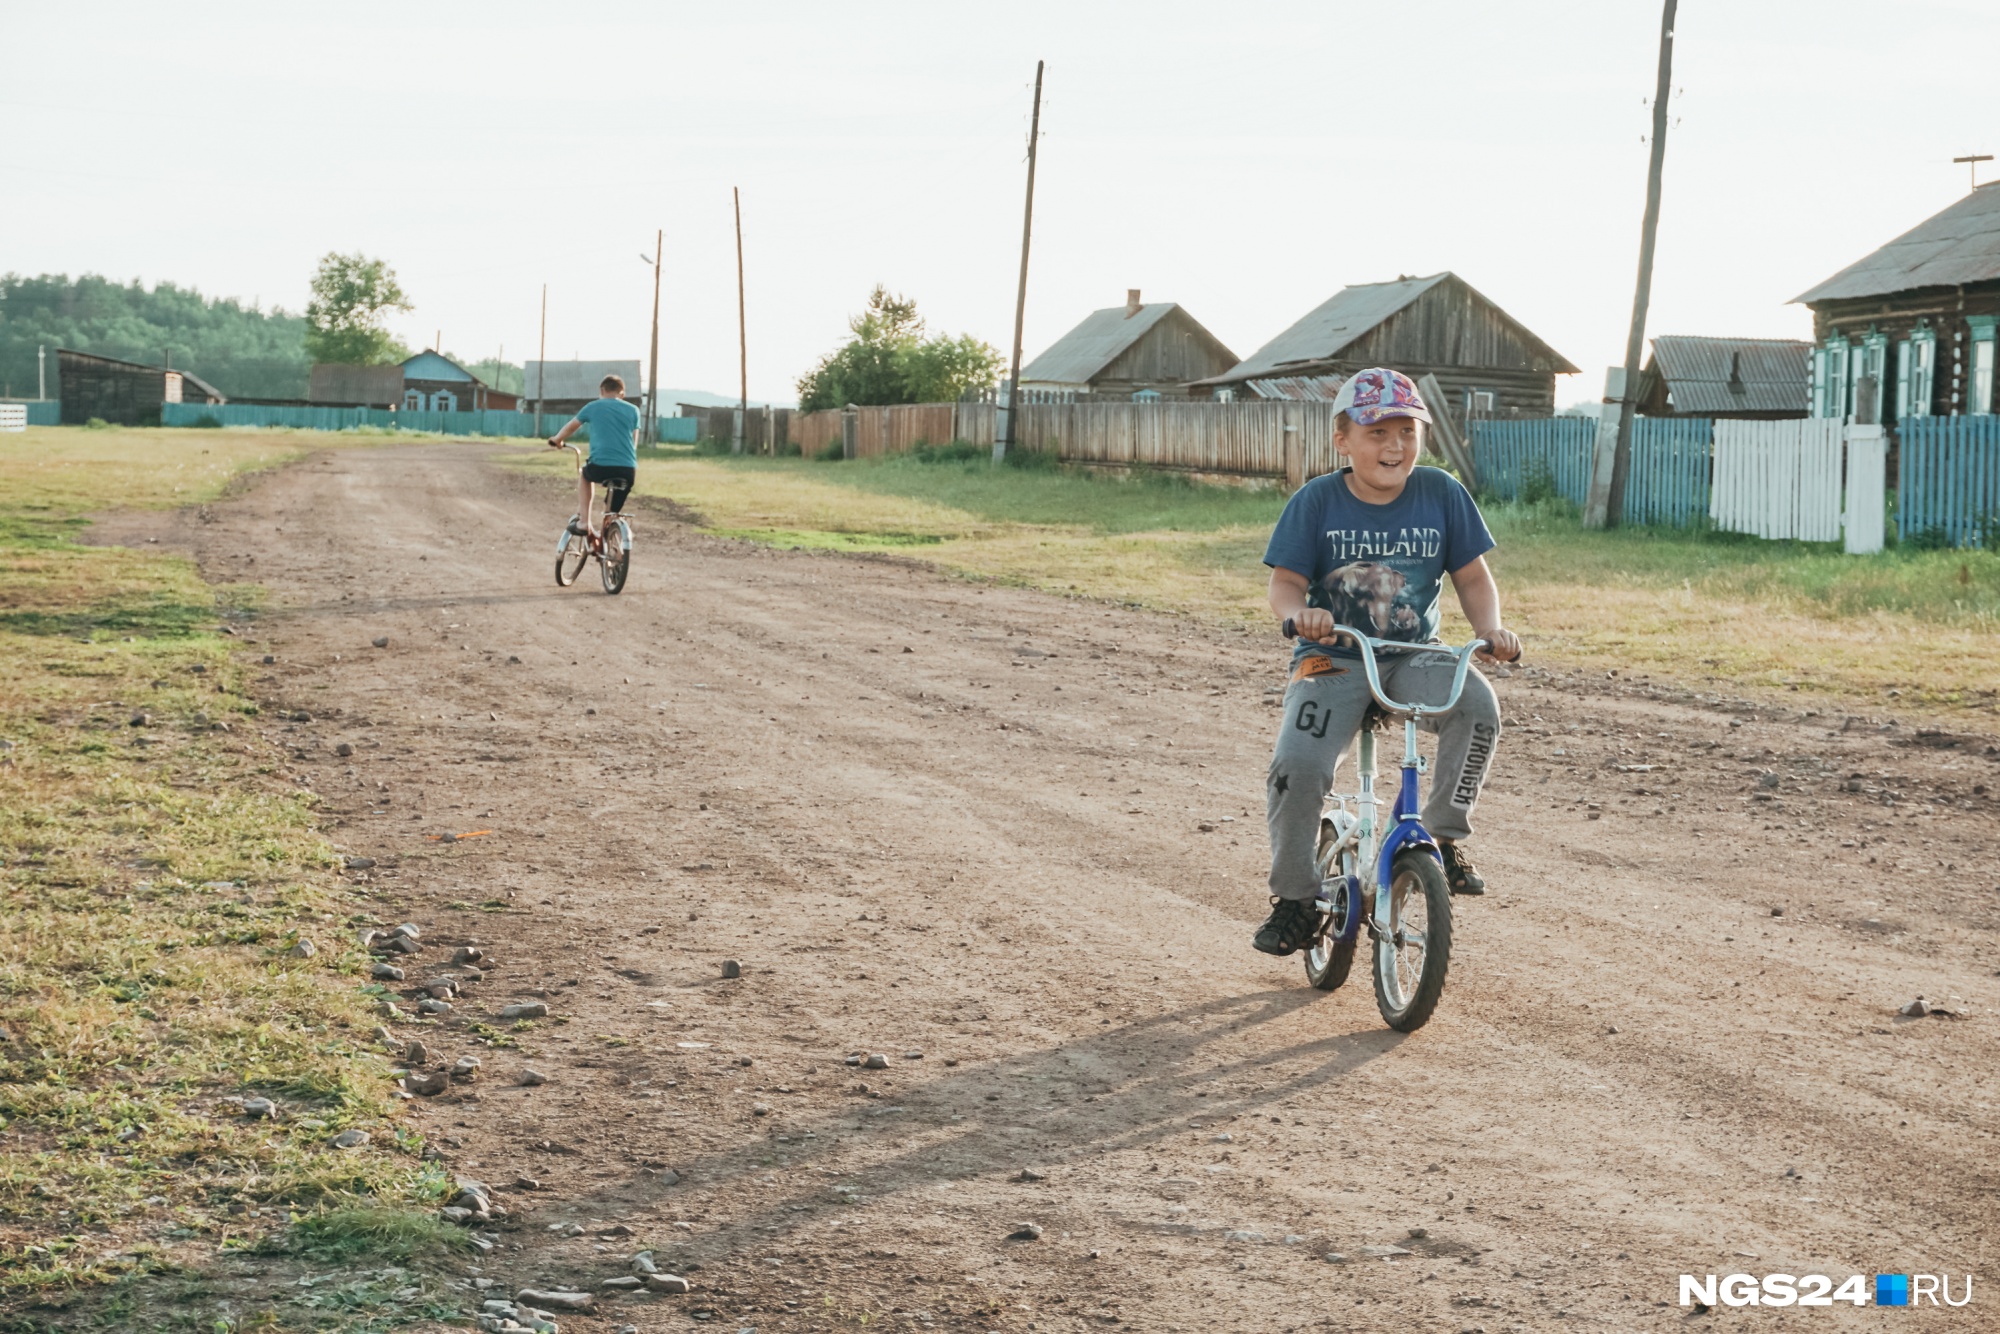 Детям в Укурике есть чем заняться, помимо езды на велосипедах: в центре деревни стоит большая детская площадка, недалеко пробегают несколько рек